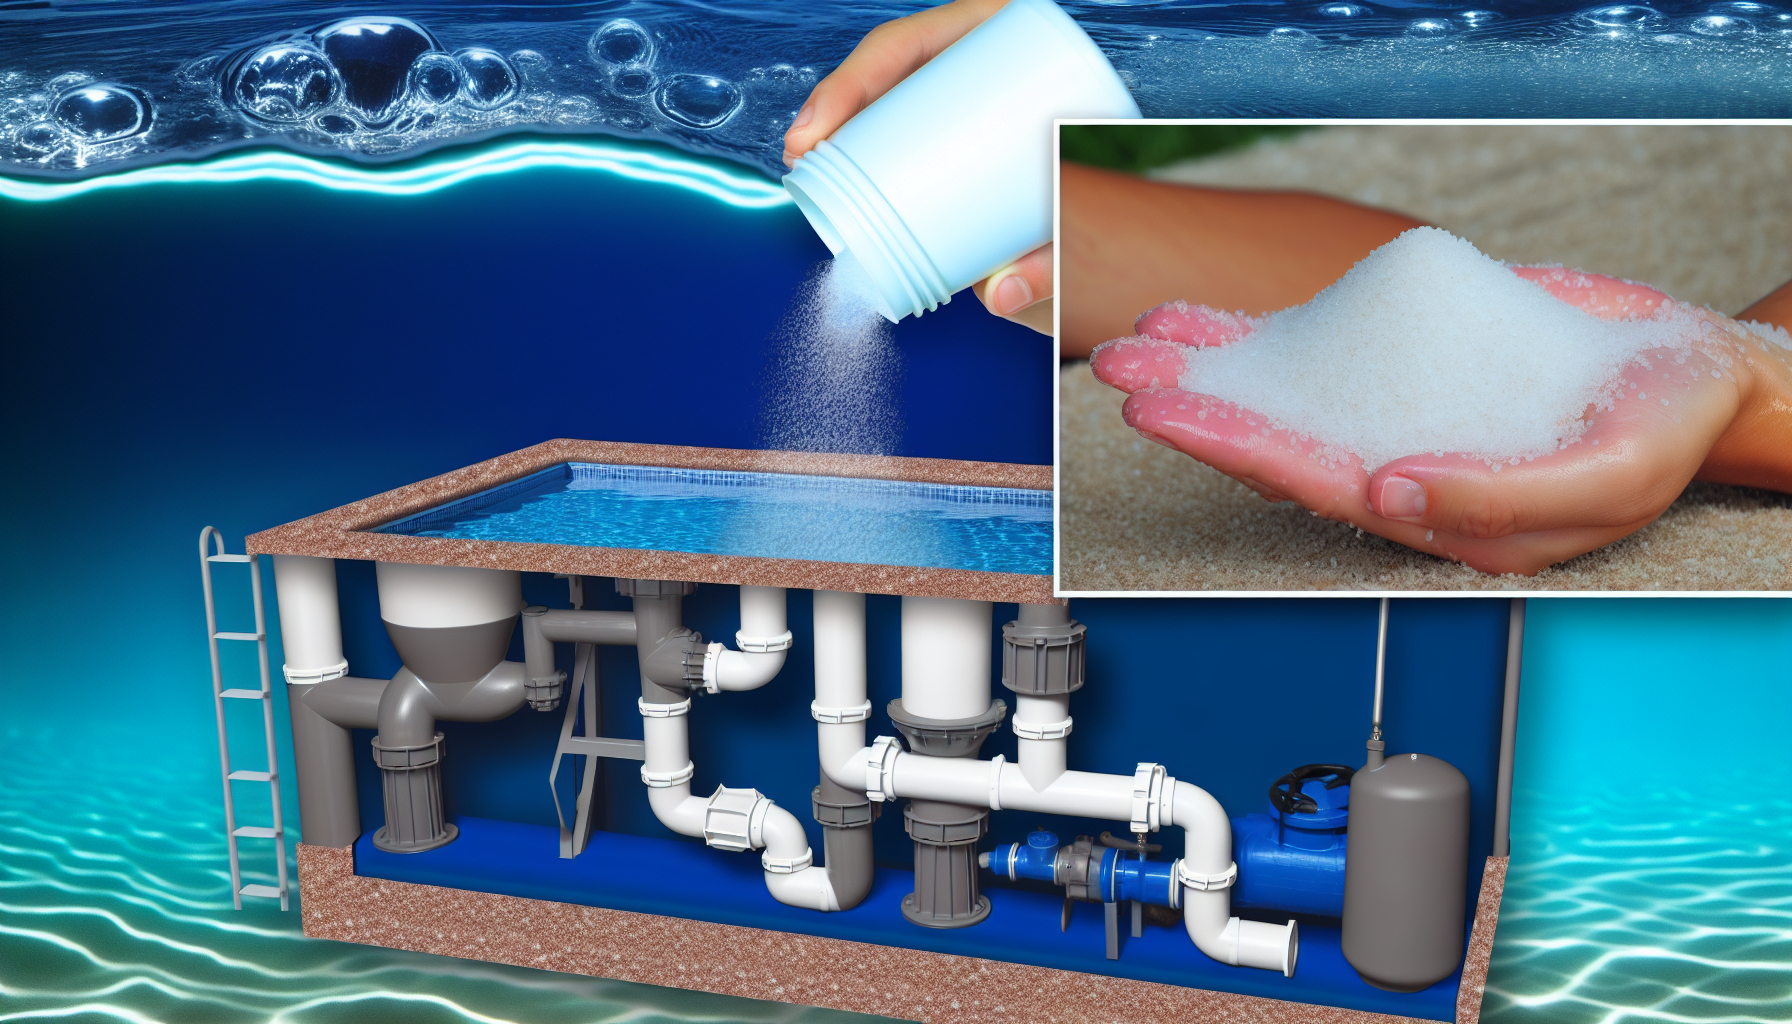 Illustration eines Poolschnitts mit integriertem Reinigungssystem und einer Hand, die Salz in das Wasser schüttet.